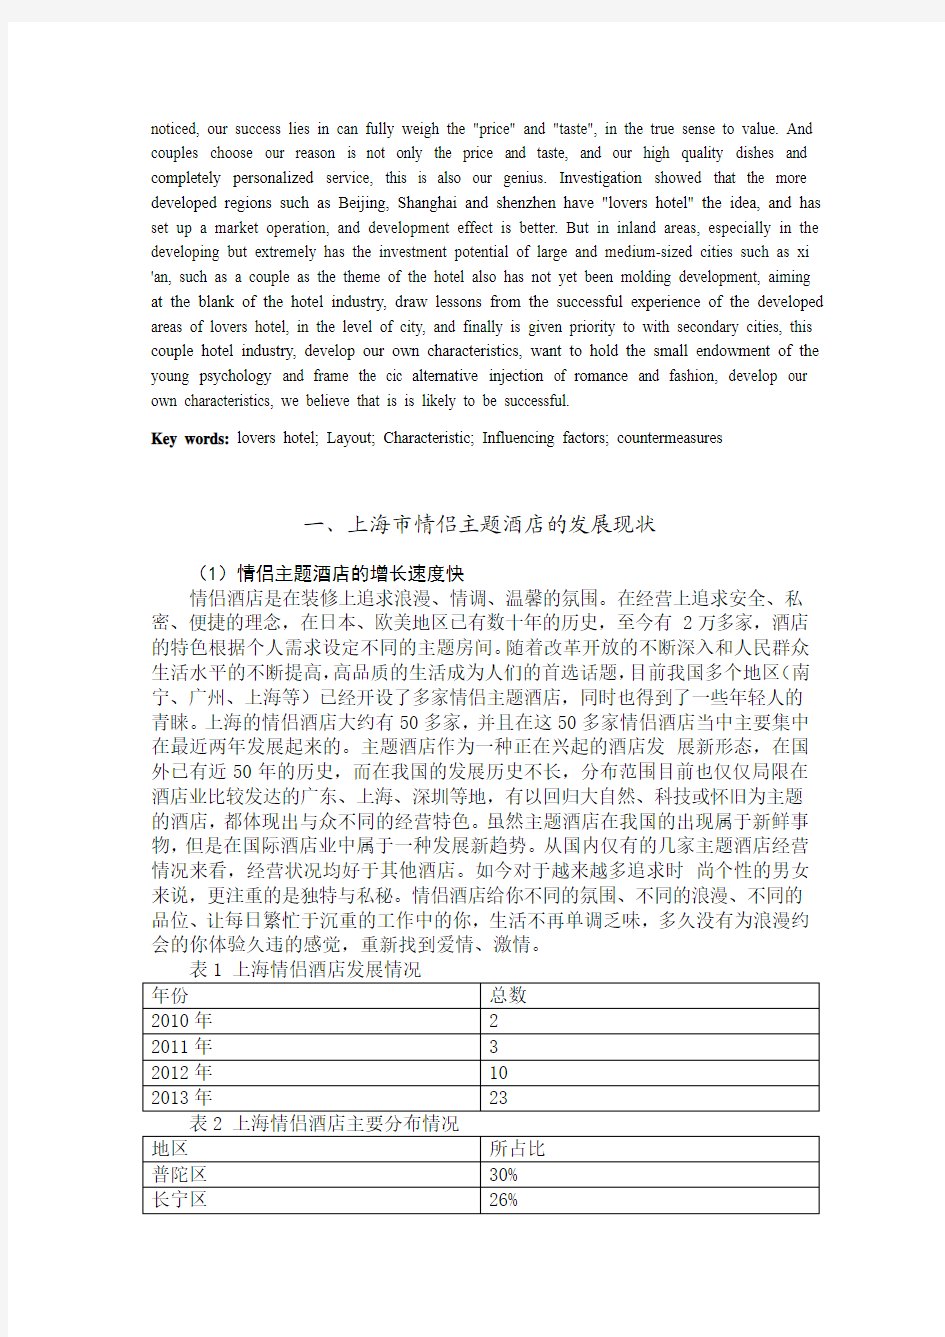 情侣主题酒店的布局、特征及影响因素刍议——以上海市为例(1)